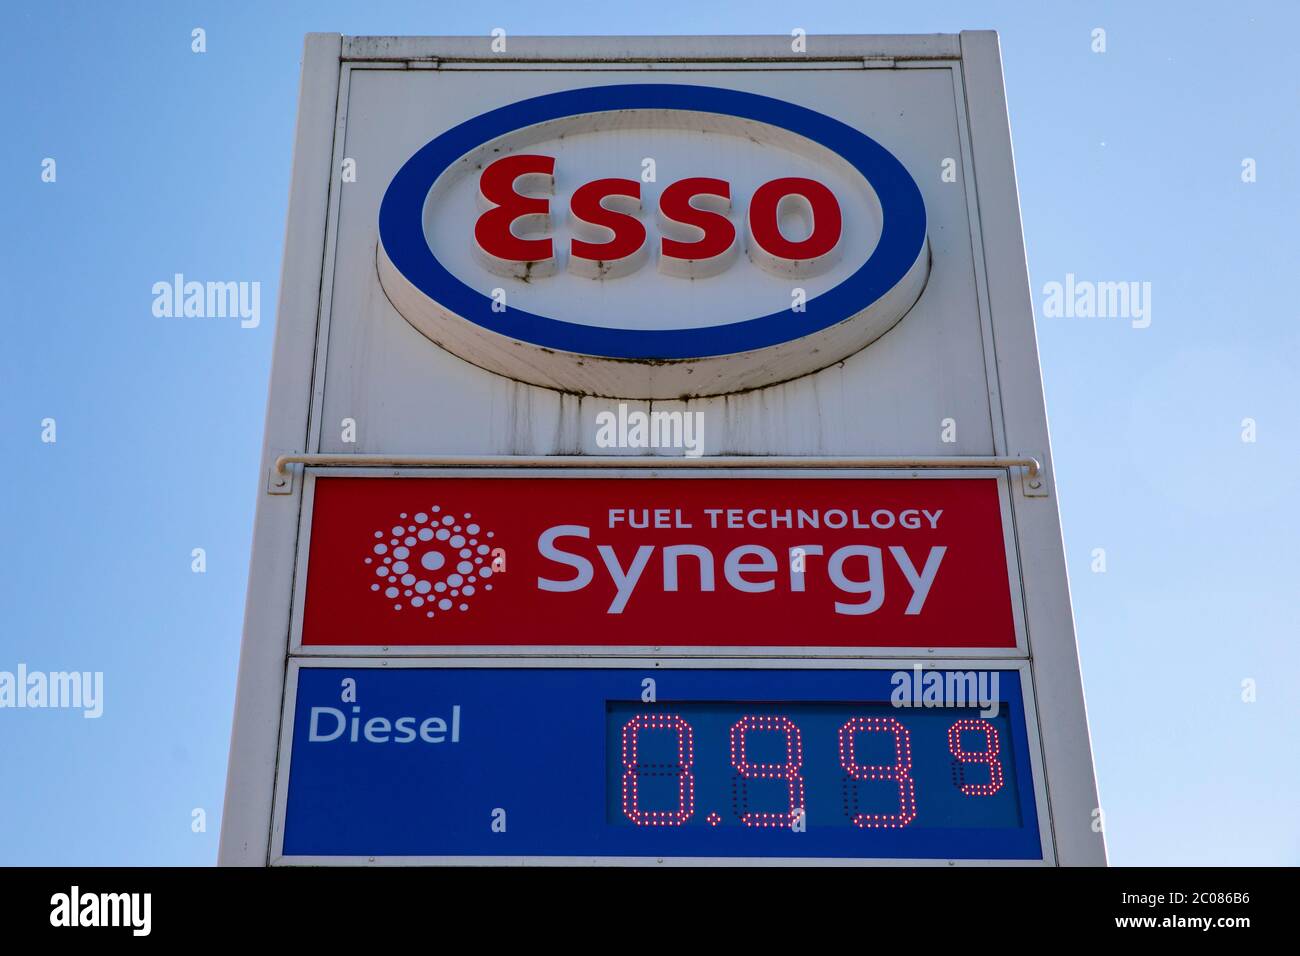 Corona-Pandemie: Diesel unter der 1 Euro-Marke. Günstige Spritpreise wie seit 2009 nicht mehr. Uhldingen, 22.04.2020 Stock Photo